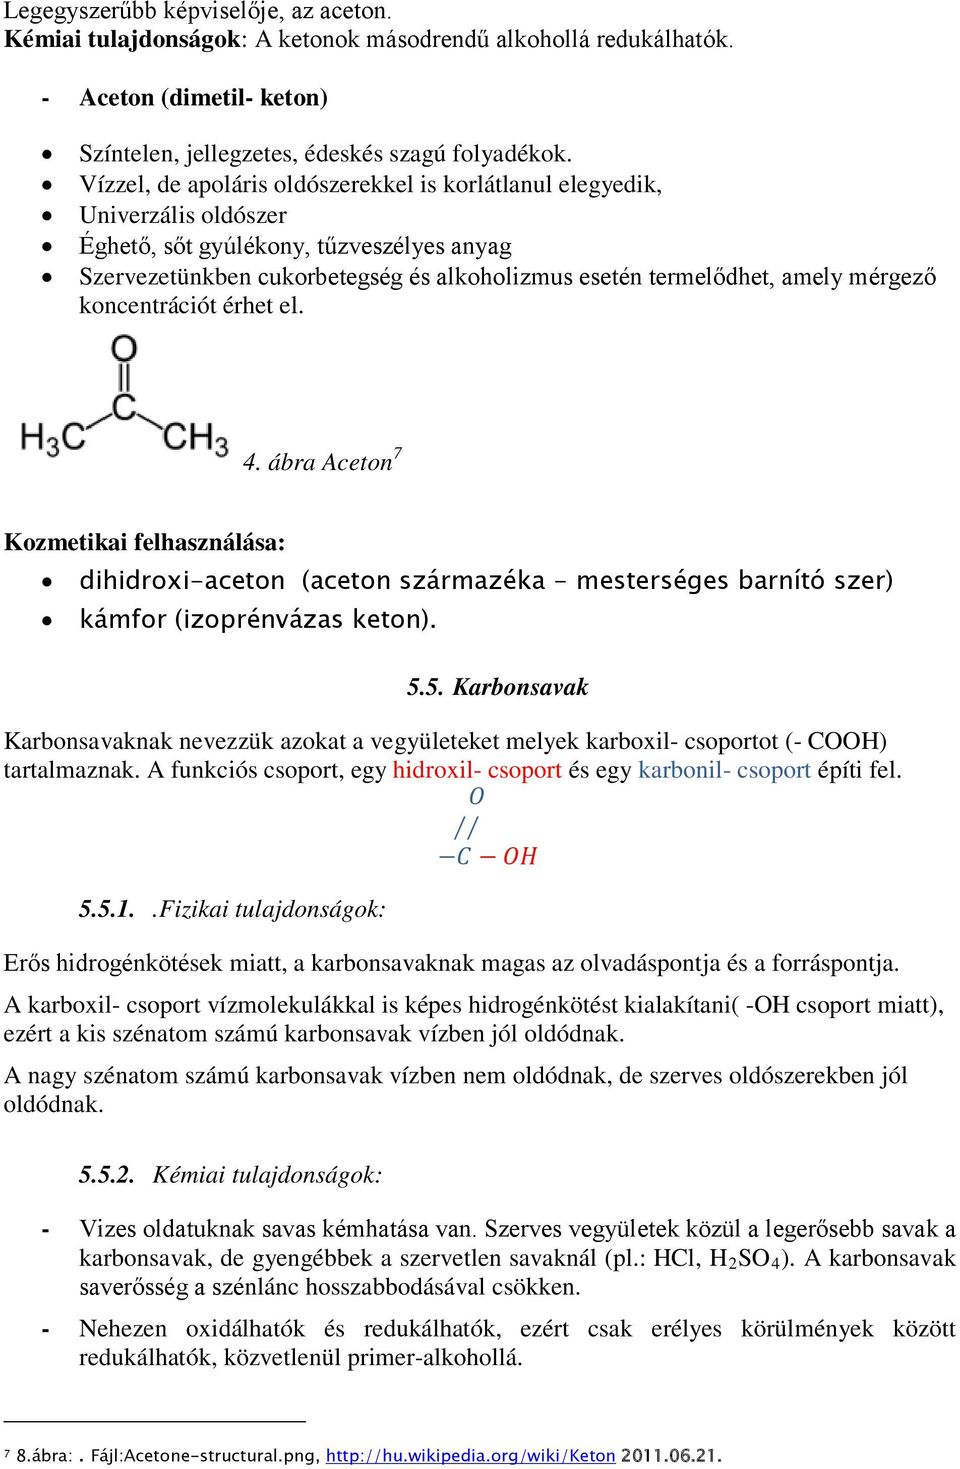 mérgező koncentrációt érhet el. 4. ábra Aceton 7 Kozmetikai felhasználása: dihidroxi-aceton (aceton származéka - mesterséges barnító szer) kámfor (izoprénvázas keton). 5.